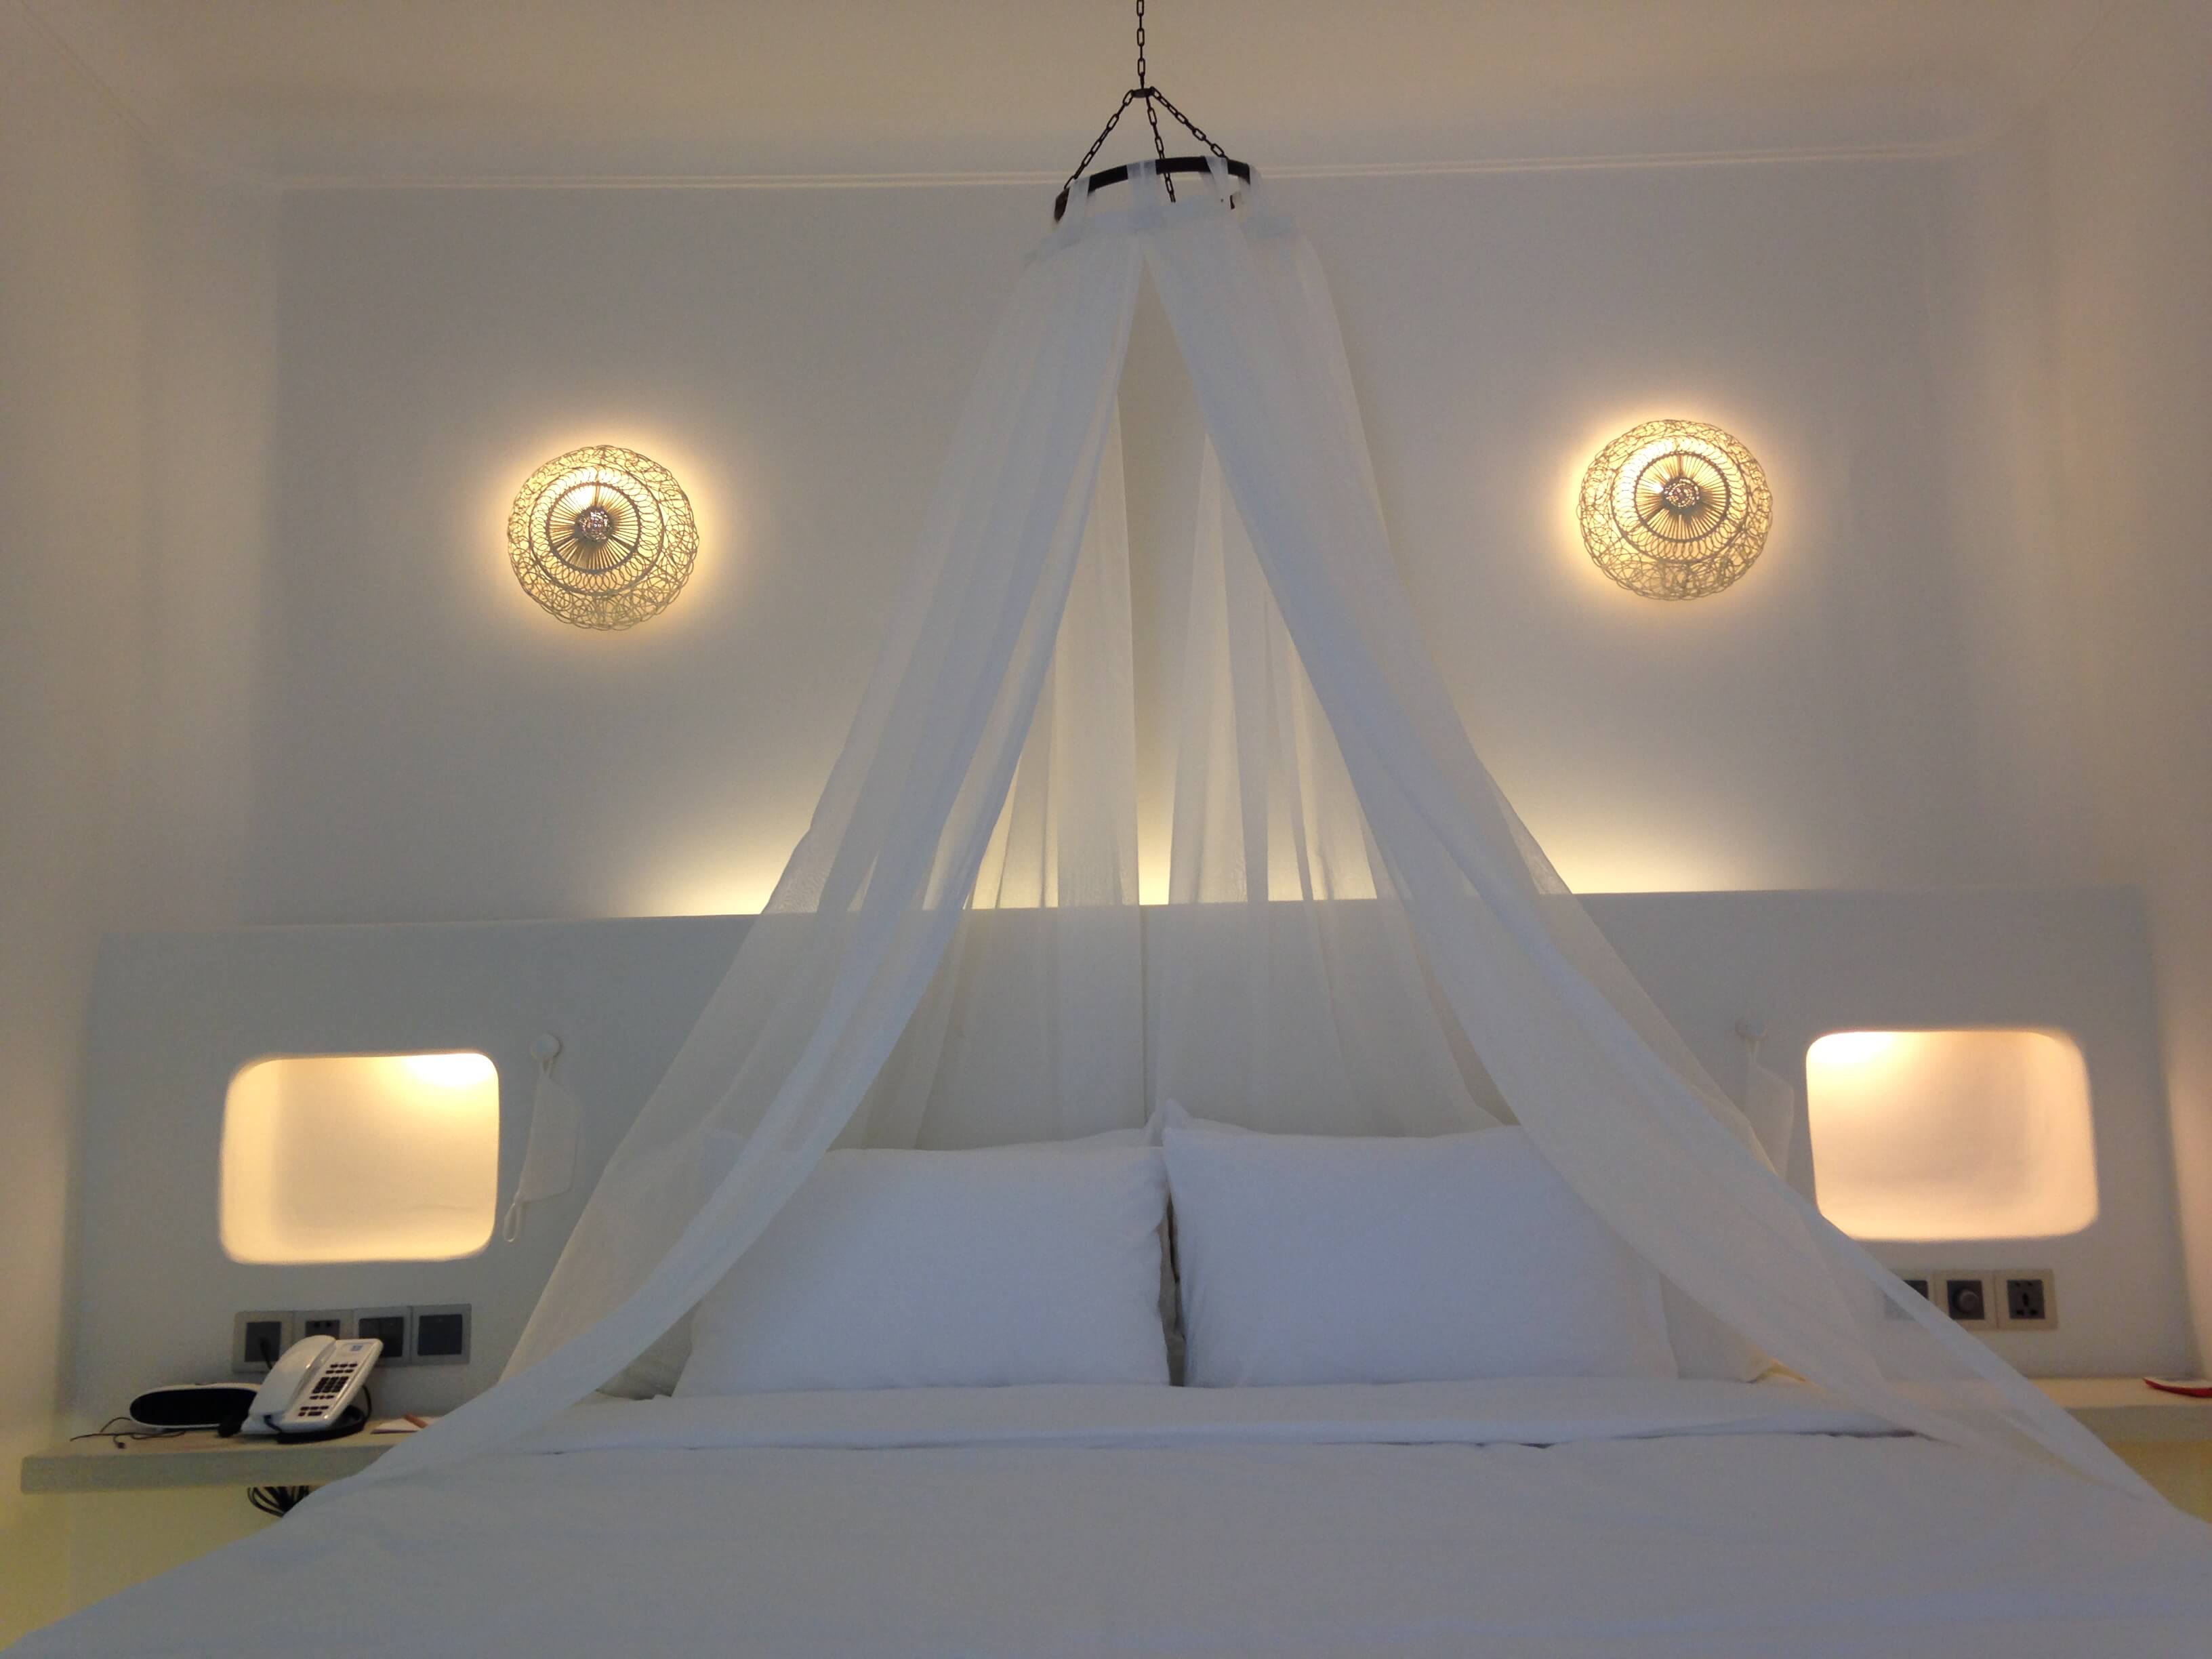 Không gian phòng ngủ tại Anoasis Resort Long Hai thật ấn tượng và thu hút với chiếc đèn mây tre của Đèn Xinh